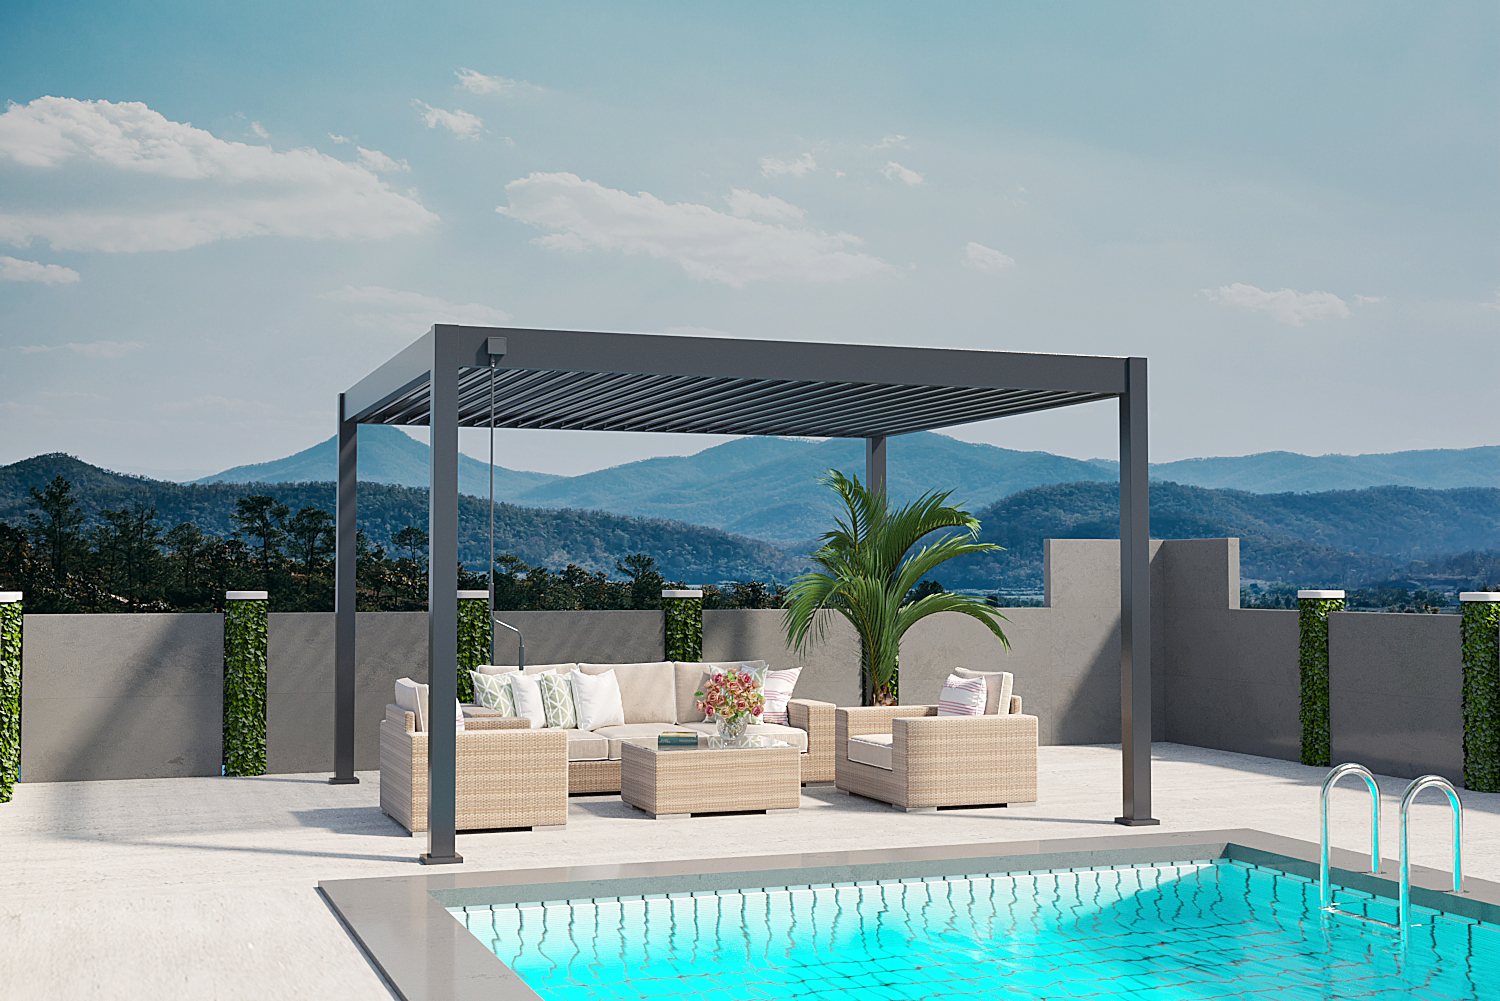 Garten Living Pergola Pavillon mit einstellbarem Stoffdach 3 x 4 m  Terrassen-Vordach Aluminium Sonnenschutz